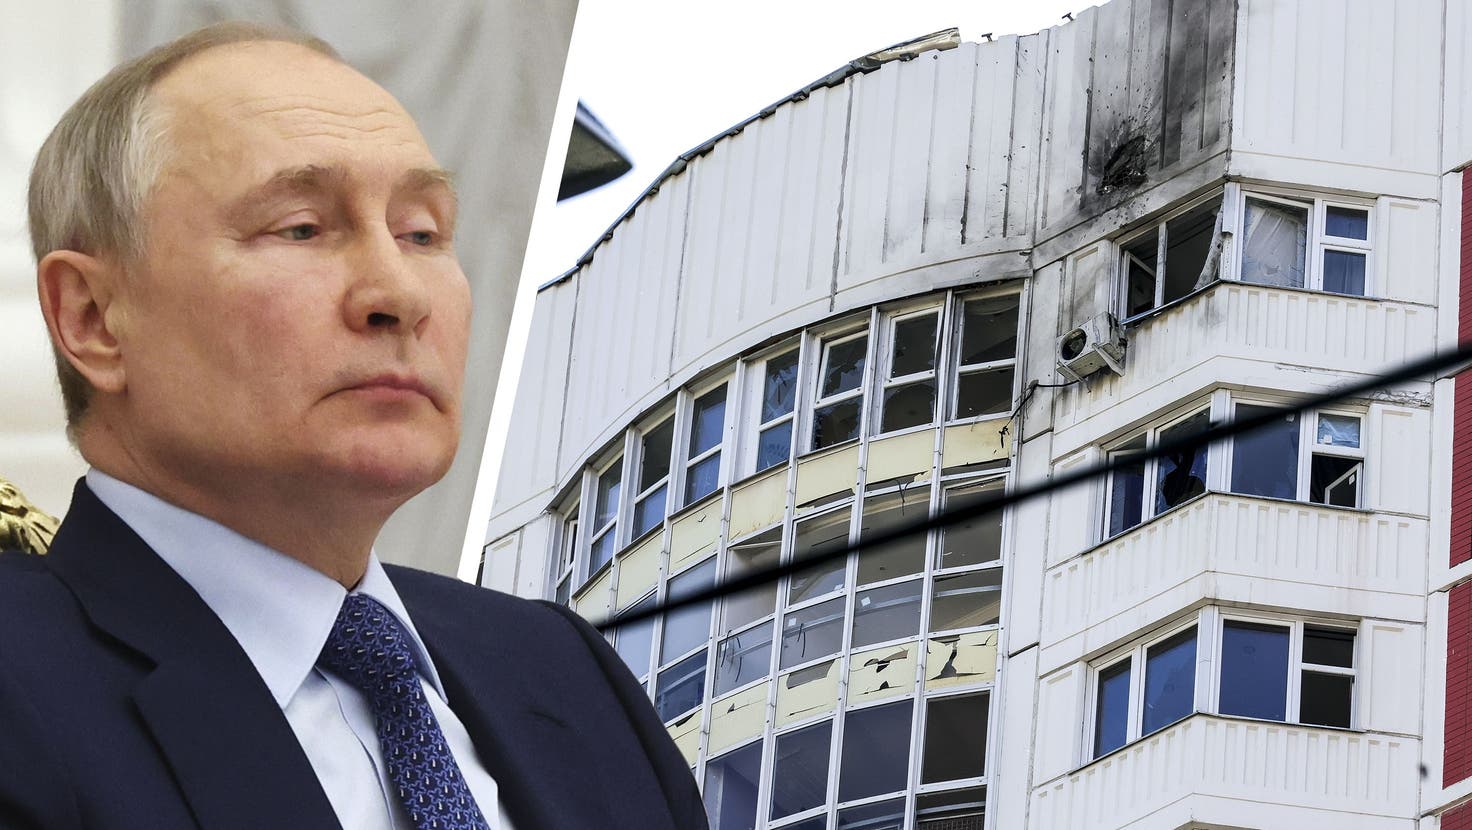 Beschädigtes Wohnhaus mitten in Moskau: Den Schaden soll eine Drohne angerichtet haben. Wer sie steuerte, ist nach wie vor unklar. (Bild: AP)